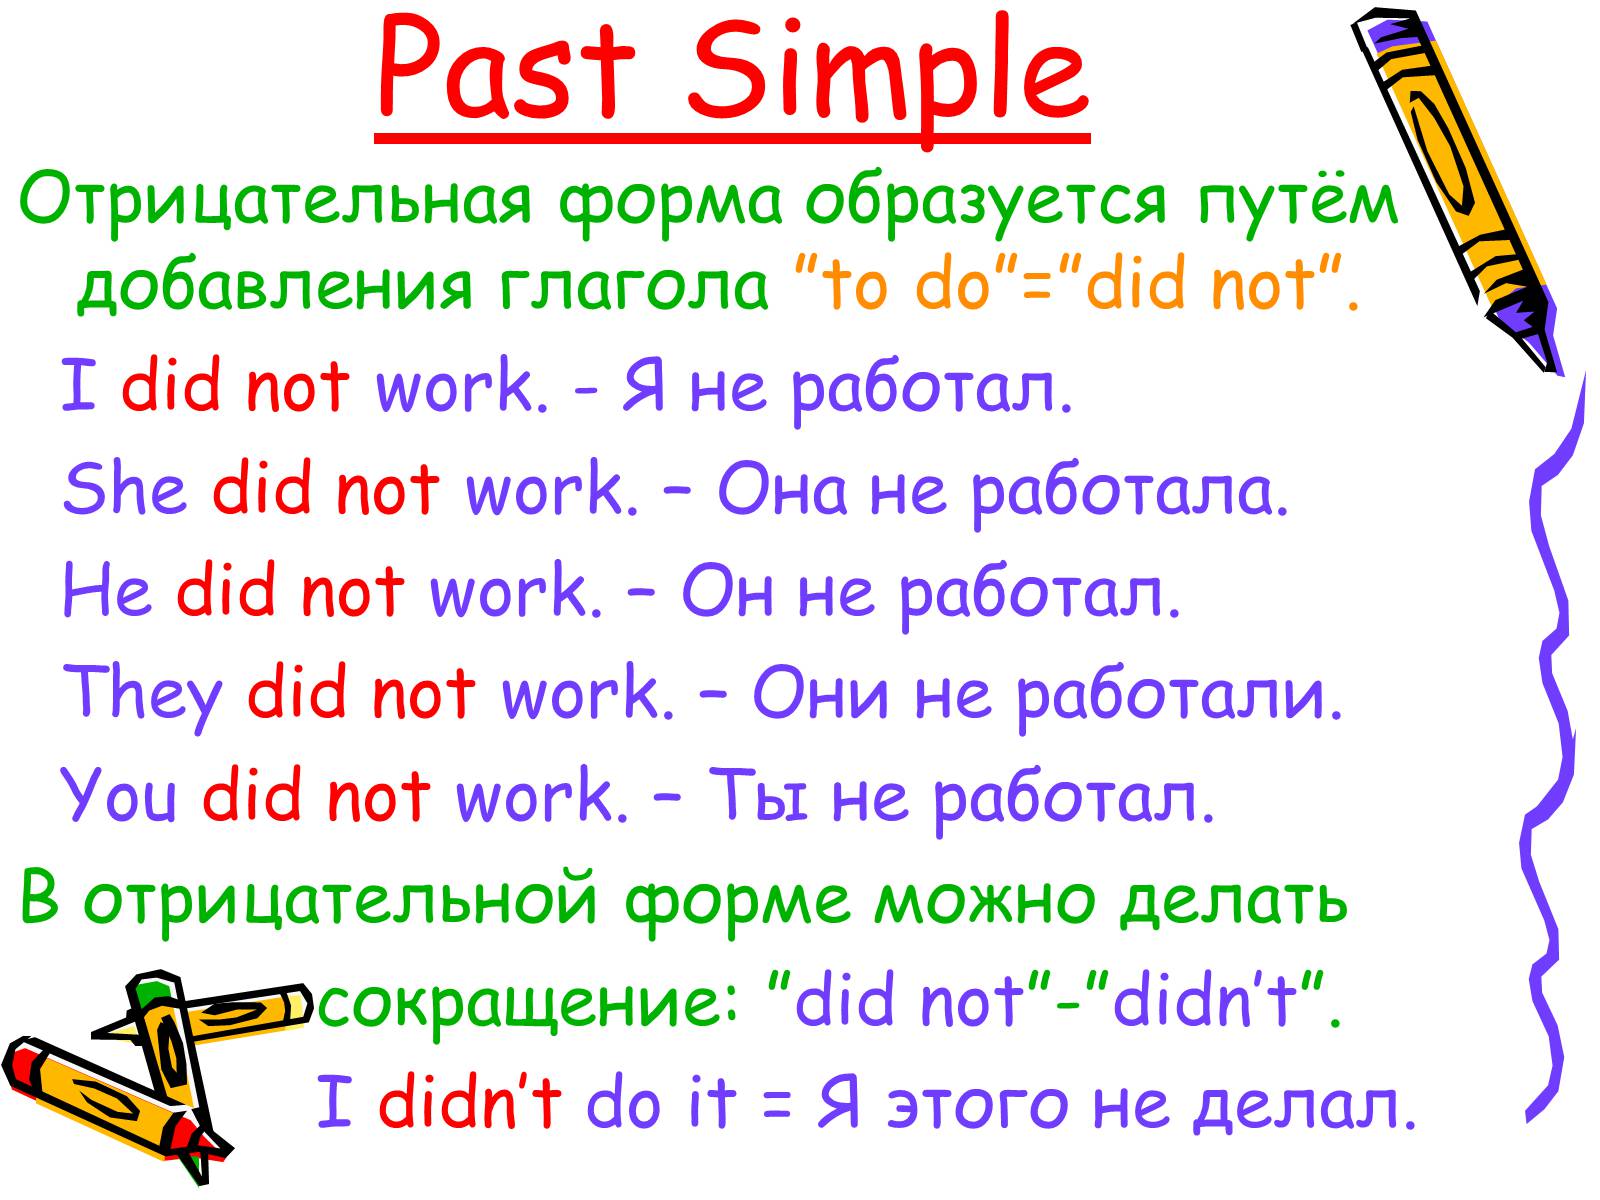 Прошедшее простое время в английском предложения. 3 Легких предложения past simple. Отрицательные предложения в past simple. Past simple примеры предложений с переводом. 3 Предложения в past simple.